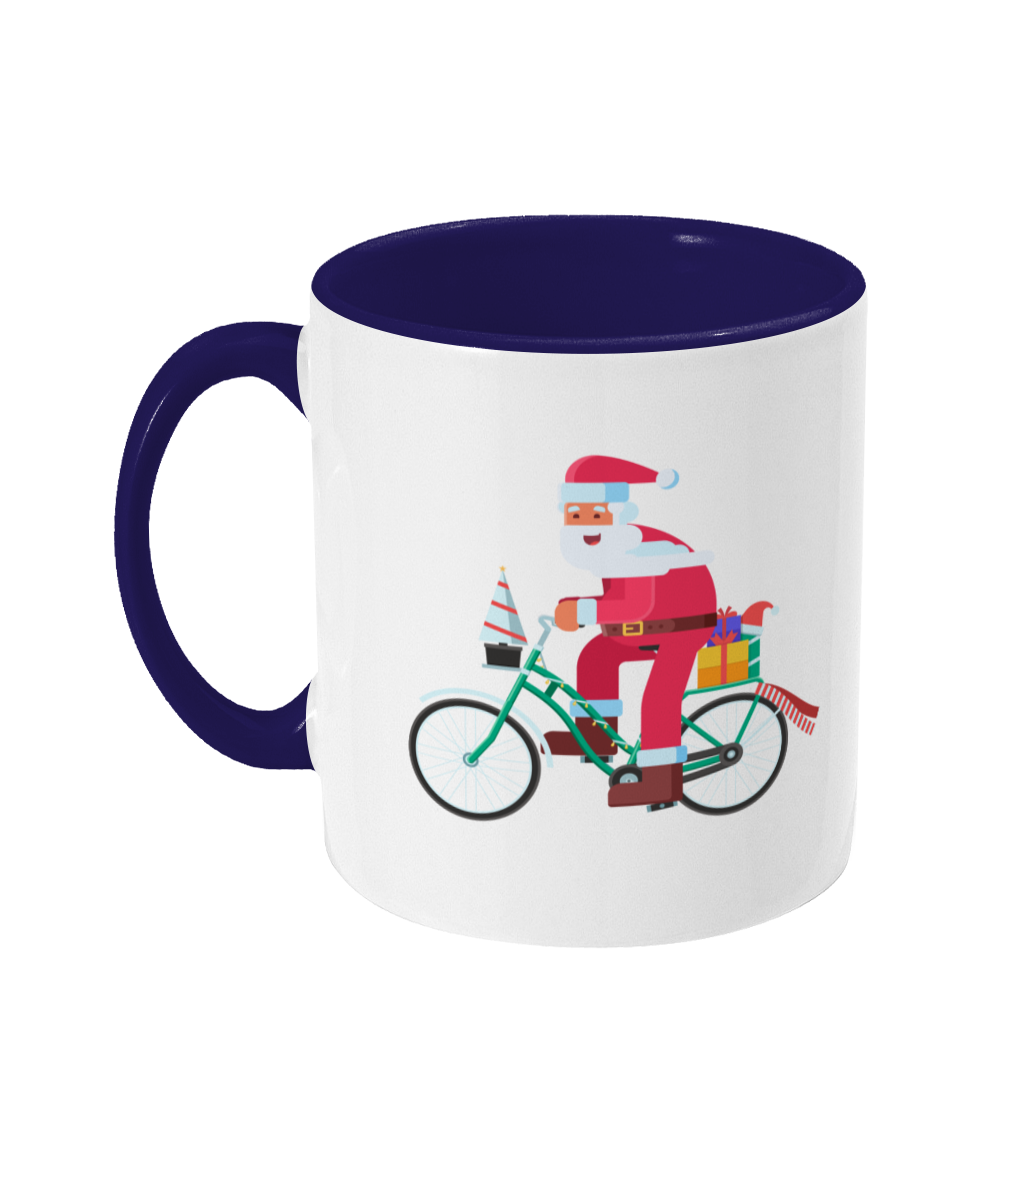 Santa on a Bike Mug